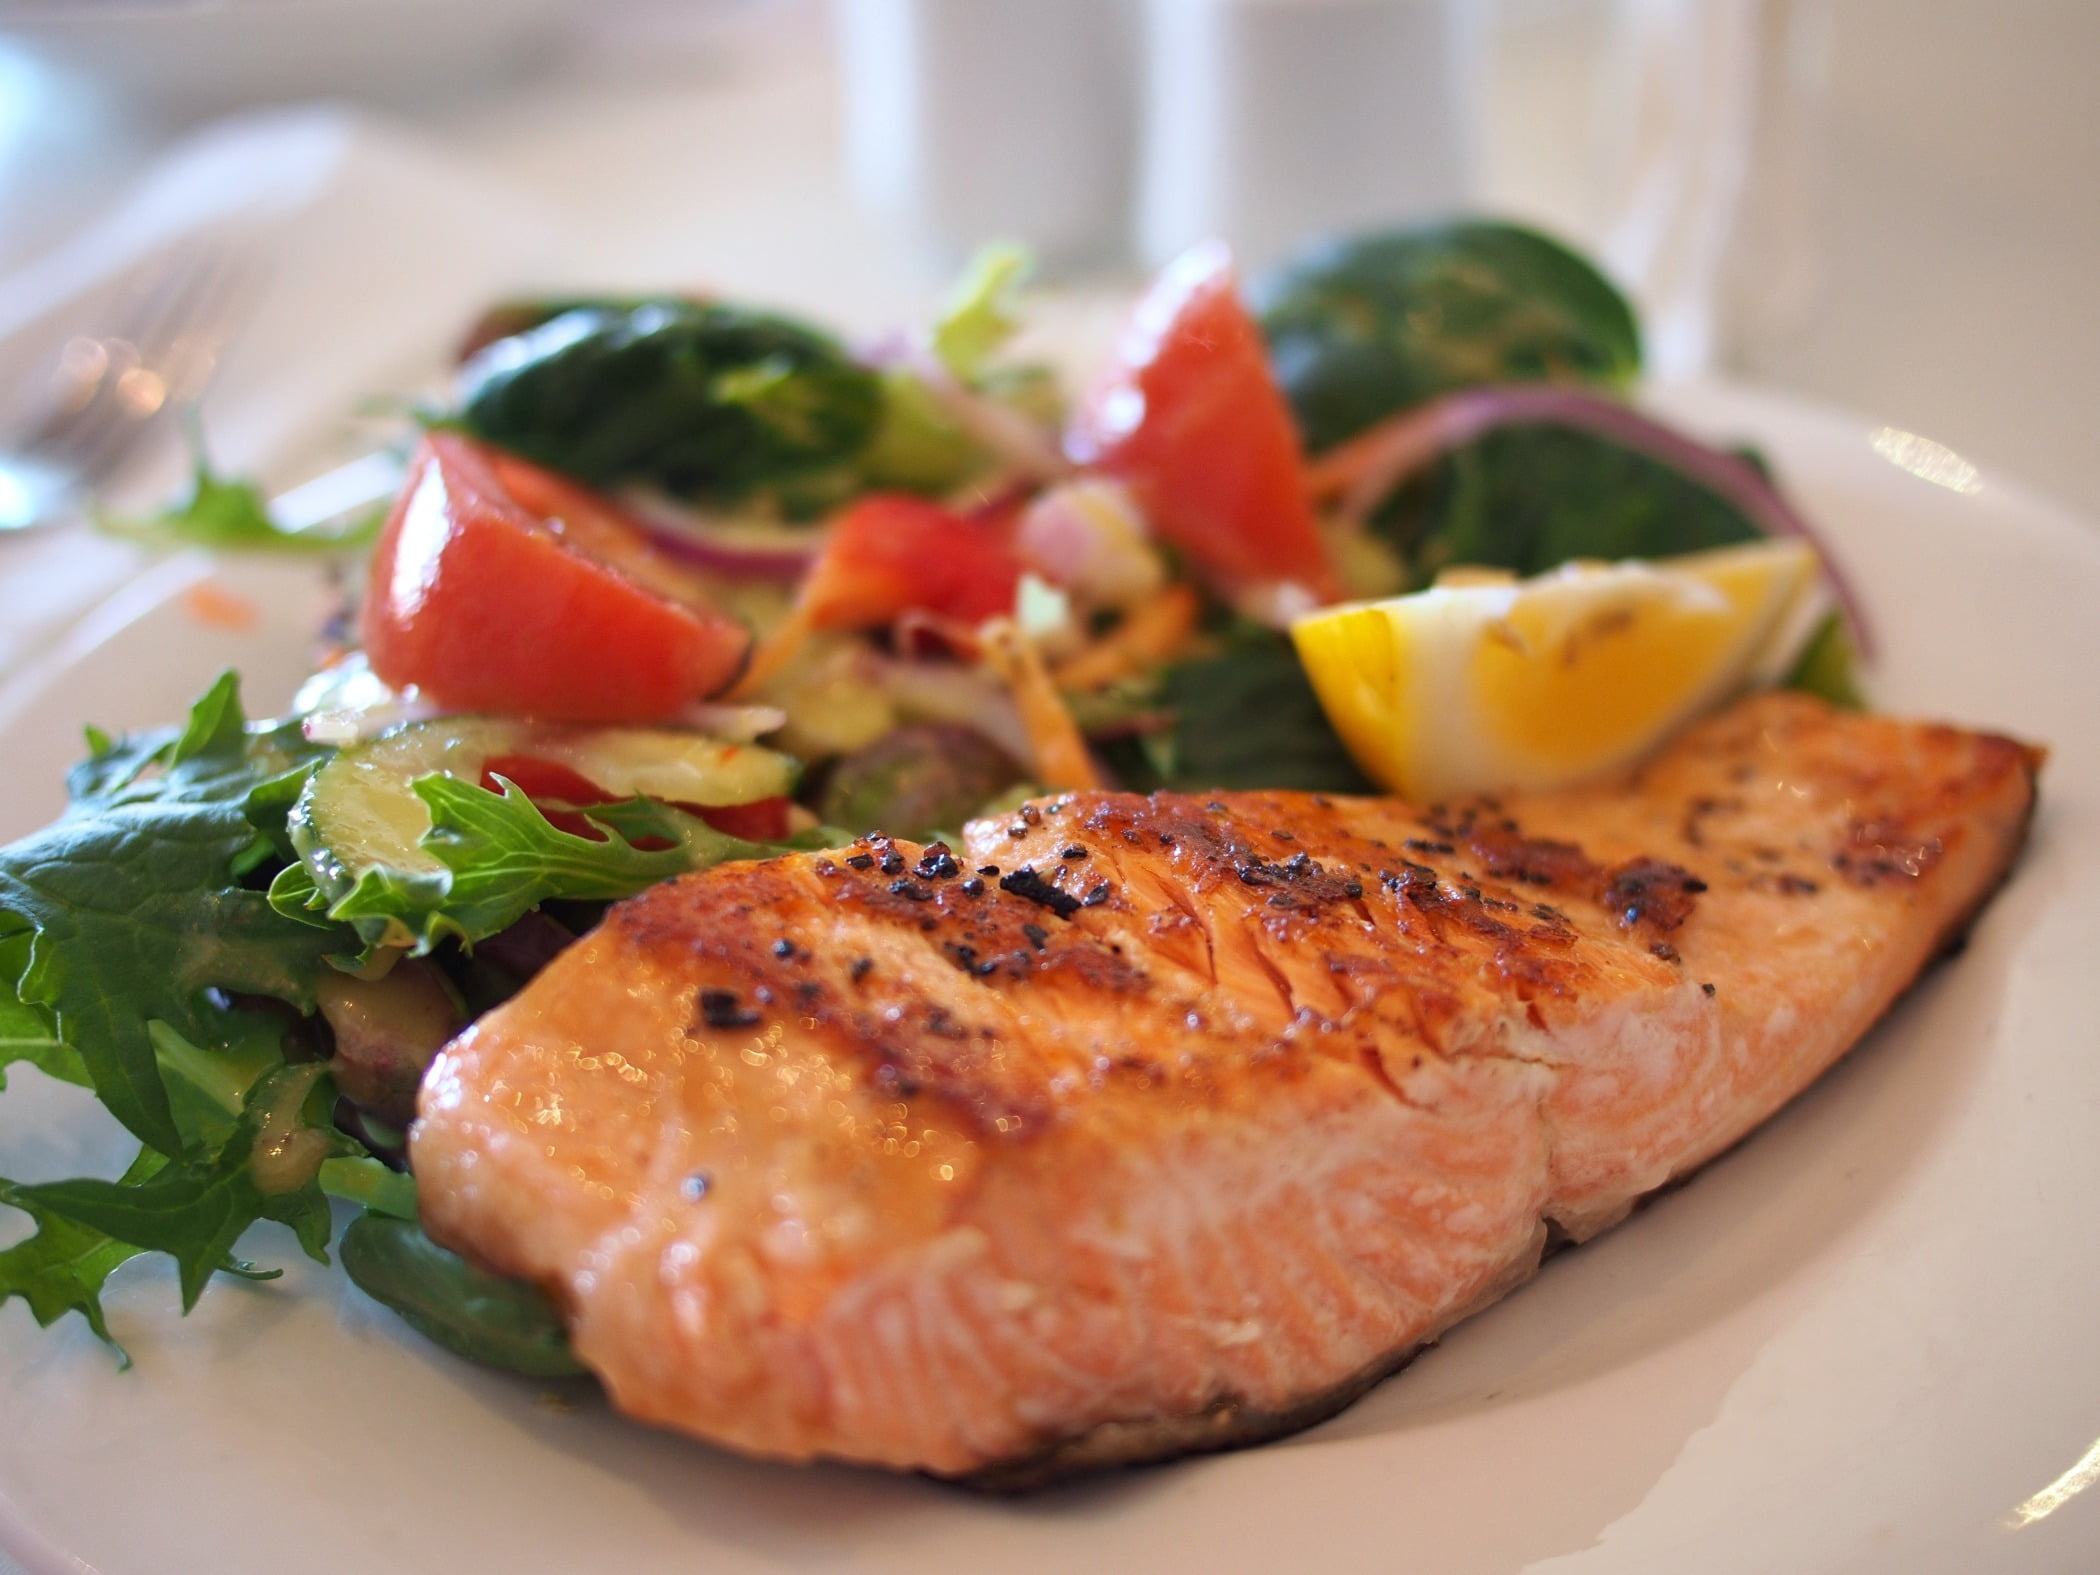 Chất béo Omega 3 trong những loại cá này có thể làm giảm nhịp tim và huyết áp ở người cao tuổi